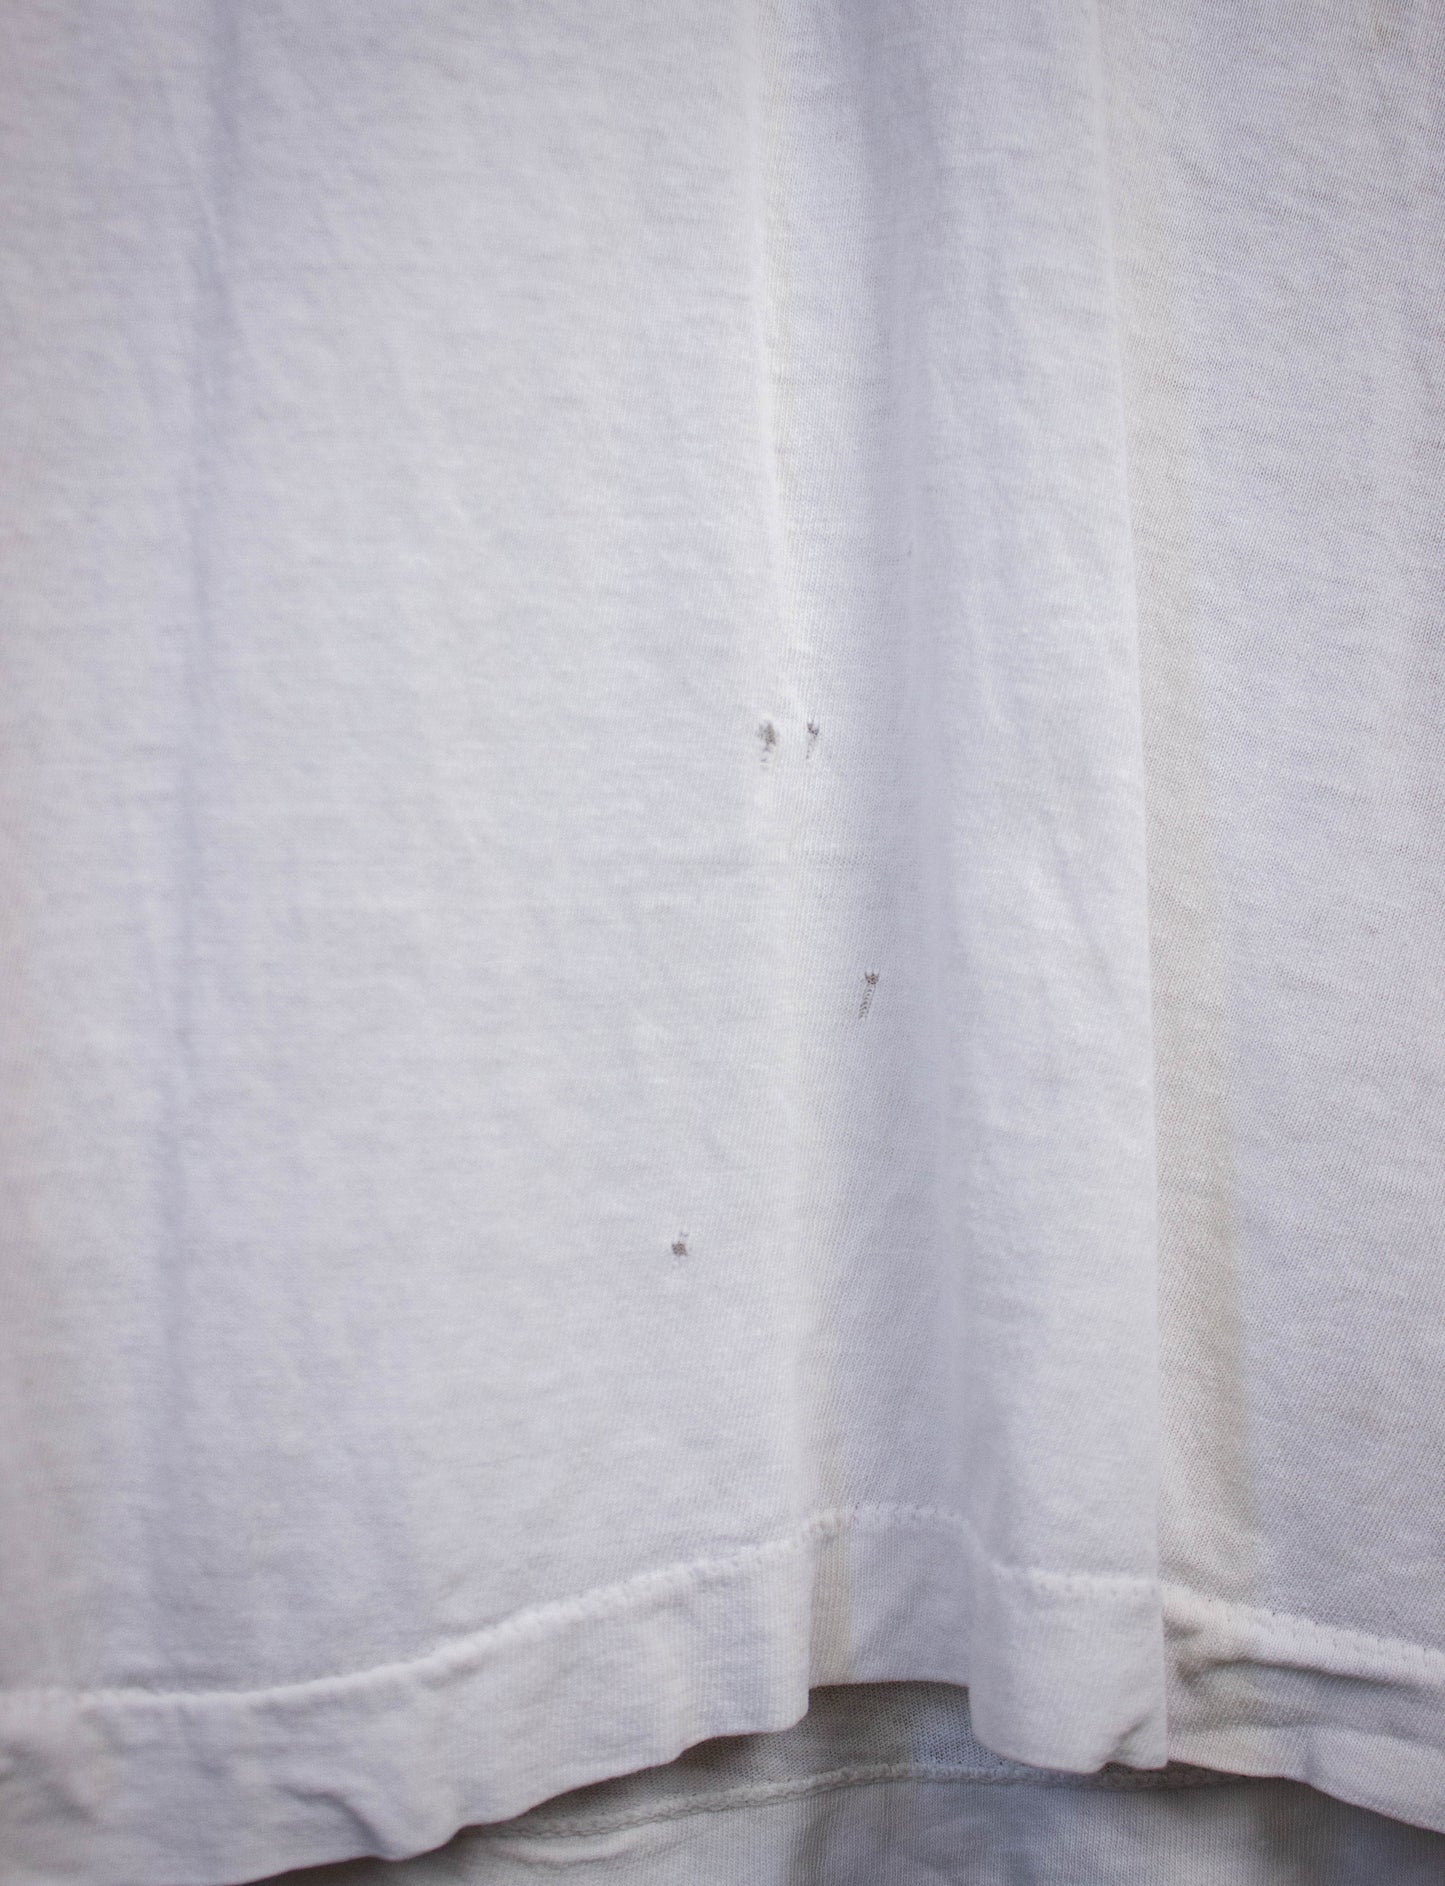 Vintage Iggy Pop Cut Off Concert T Shirt 80s White Large